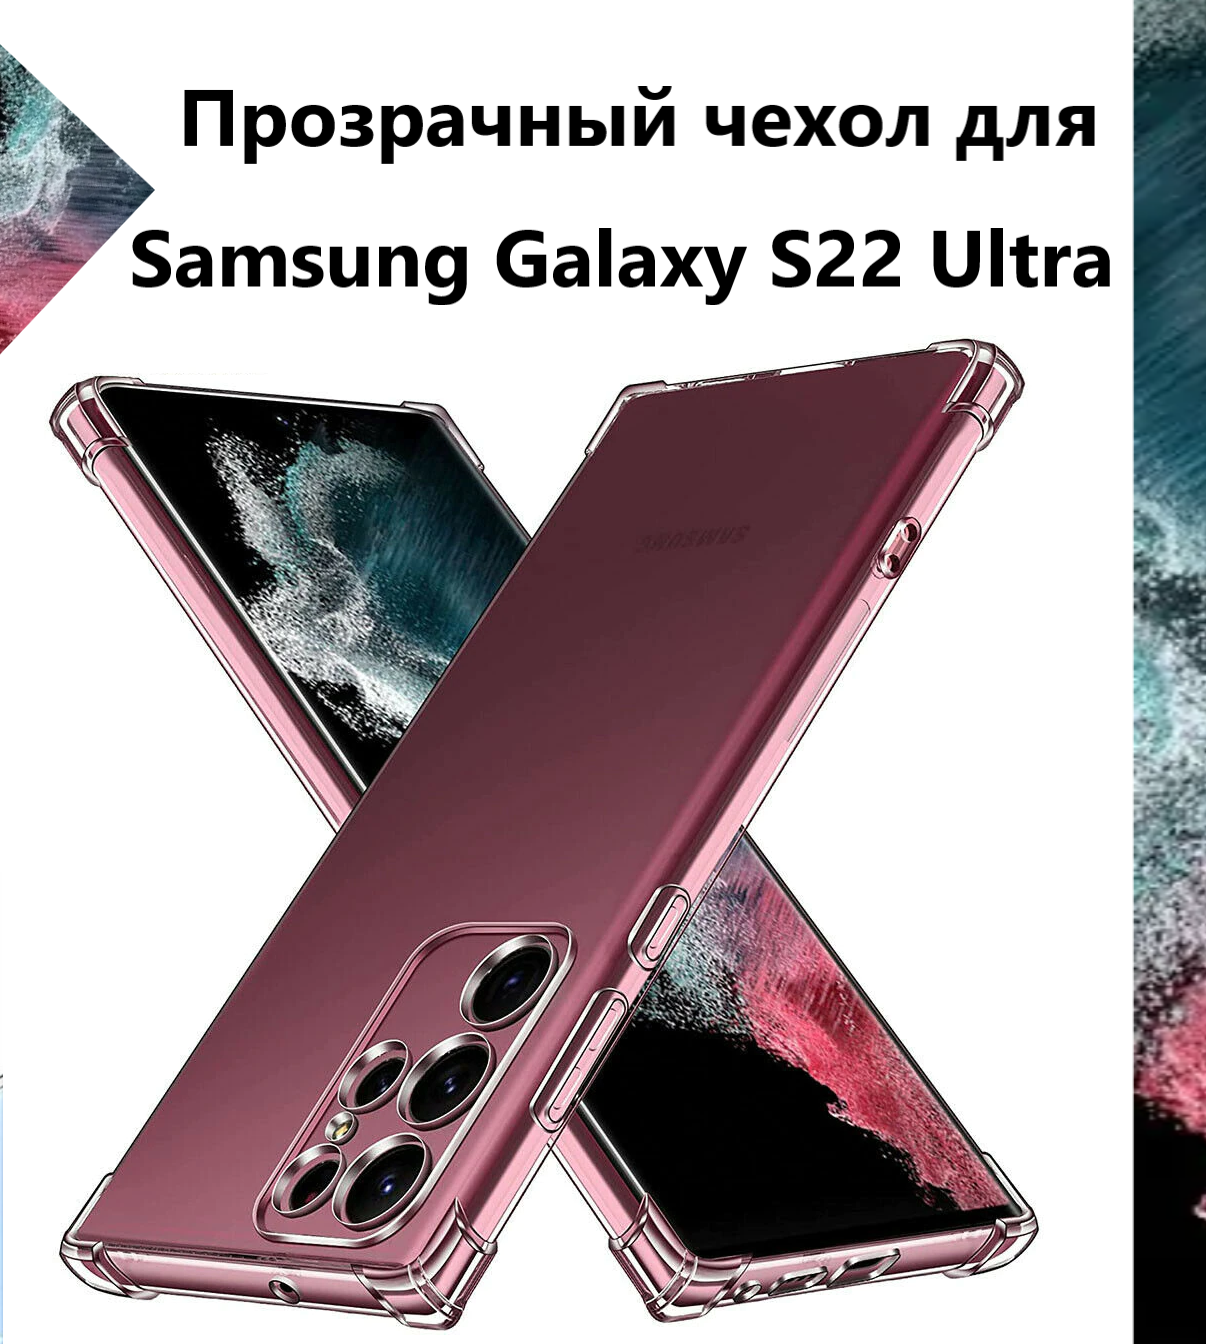 Чехол силиконовый прозрачный с противоударными углами для Samsung Galaxy S22 Ultra / Чехол для Самсунг C22 Ультра с защитой камеры Premium